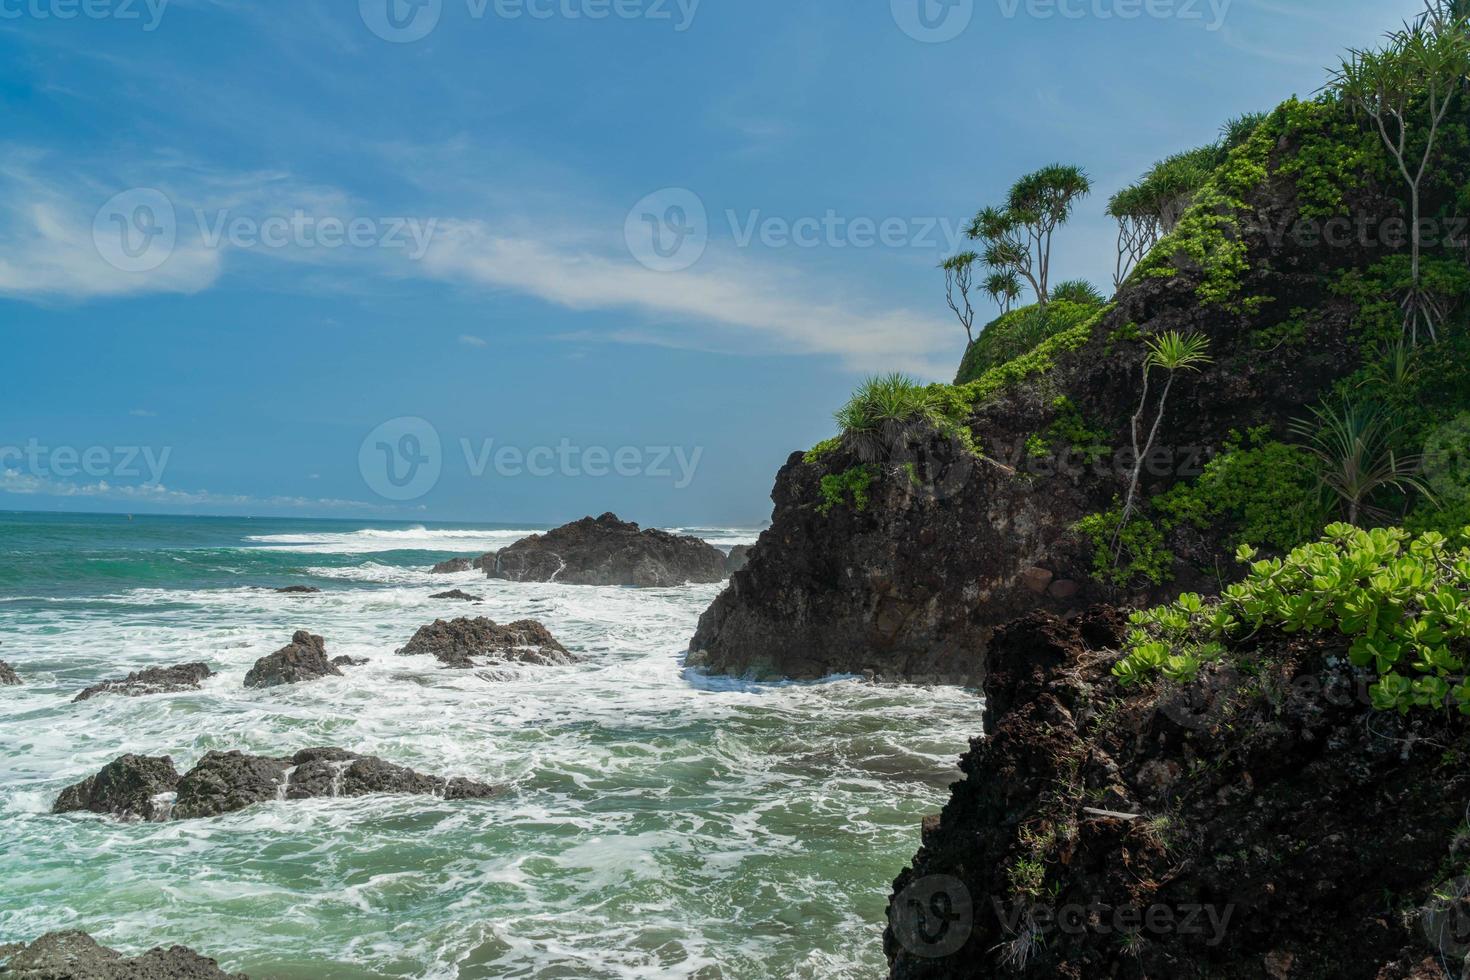 naturlig utsikt över kusten i Indonesien när vädret är soligt. karang tawulan strandturism i Indonesien foto